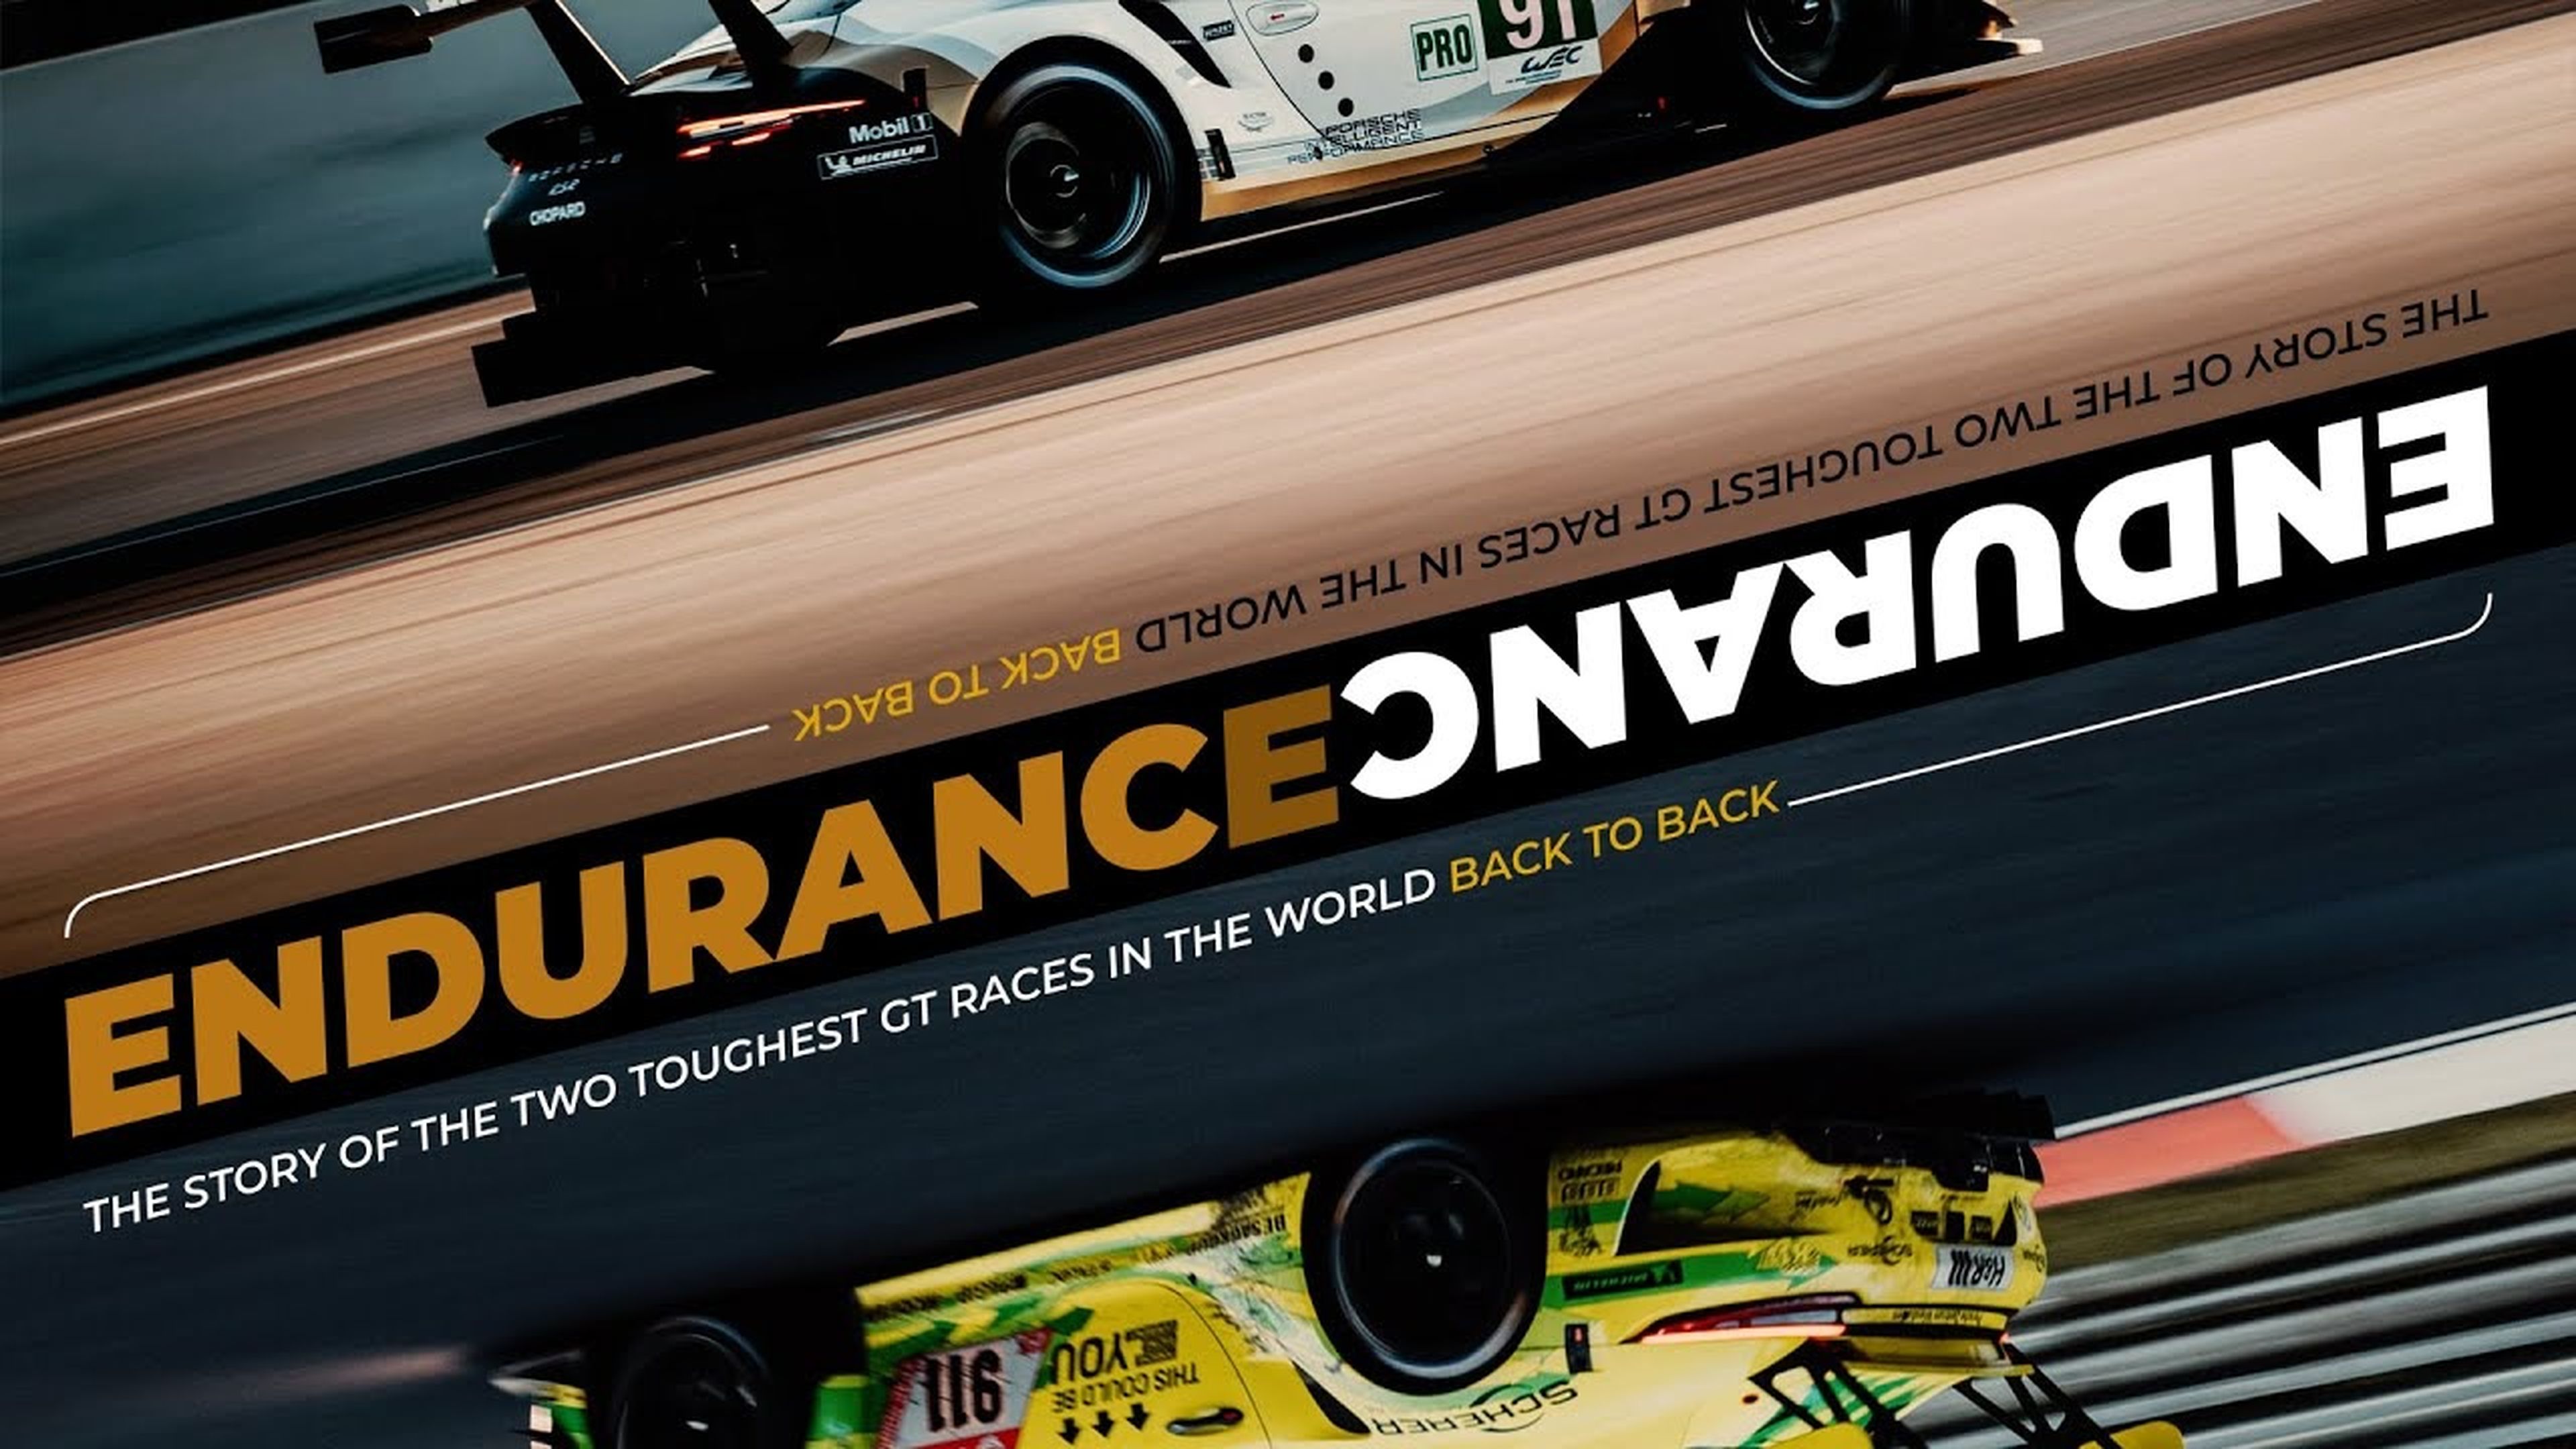 Documental Endurance sobre Porsche